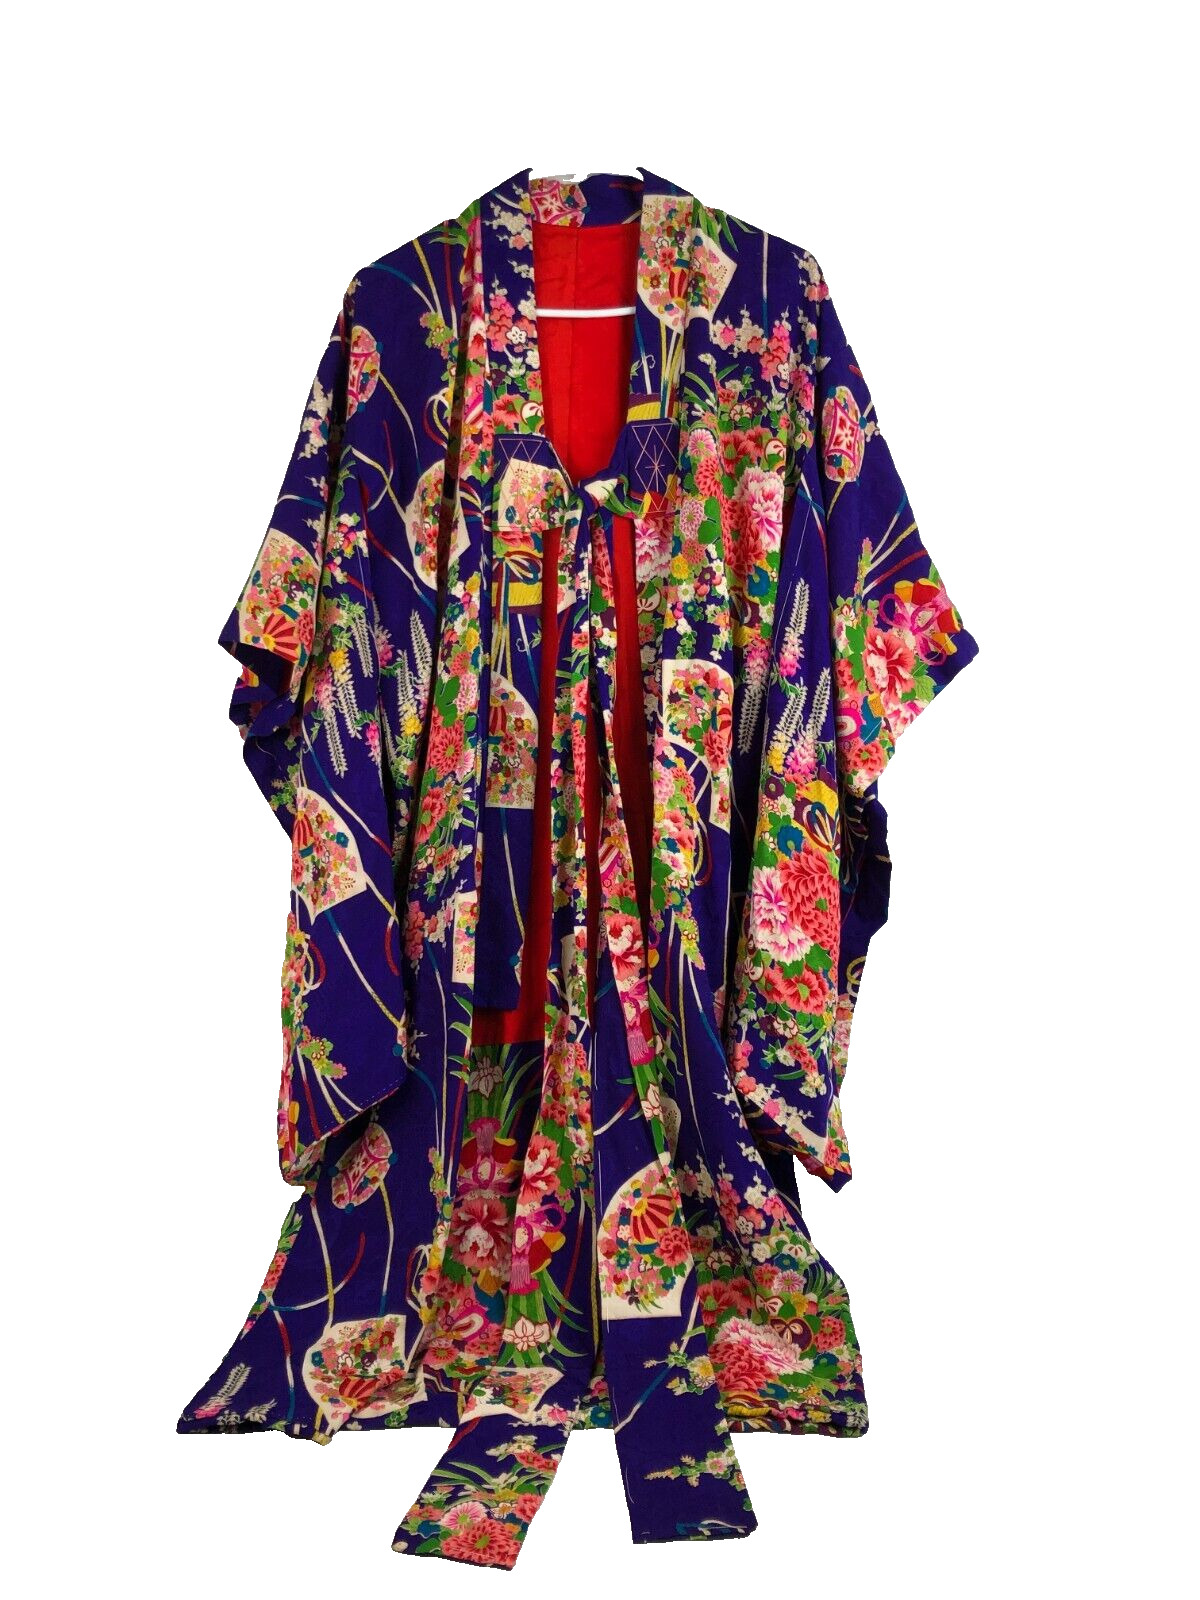 Japanese Kimono Silk Kid's Child's Vtg 1930s Purple Fans Floral Basting Stitches